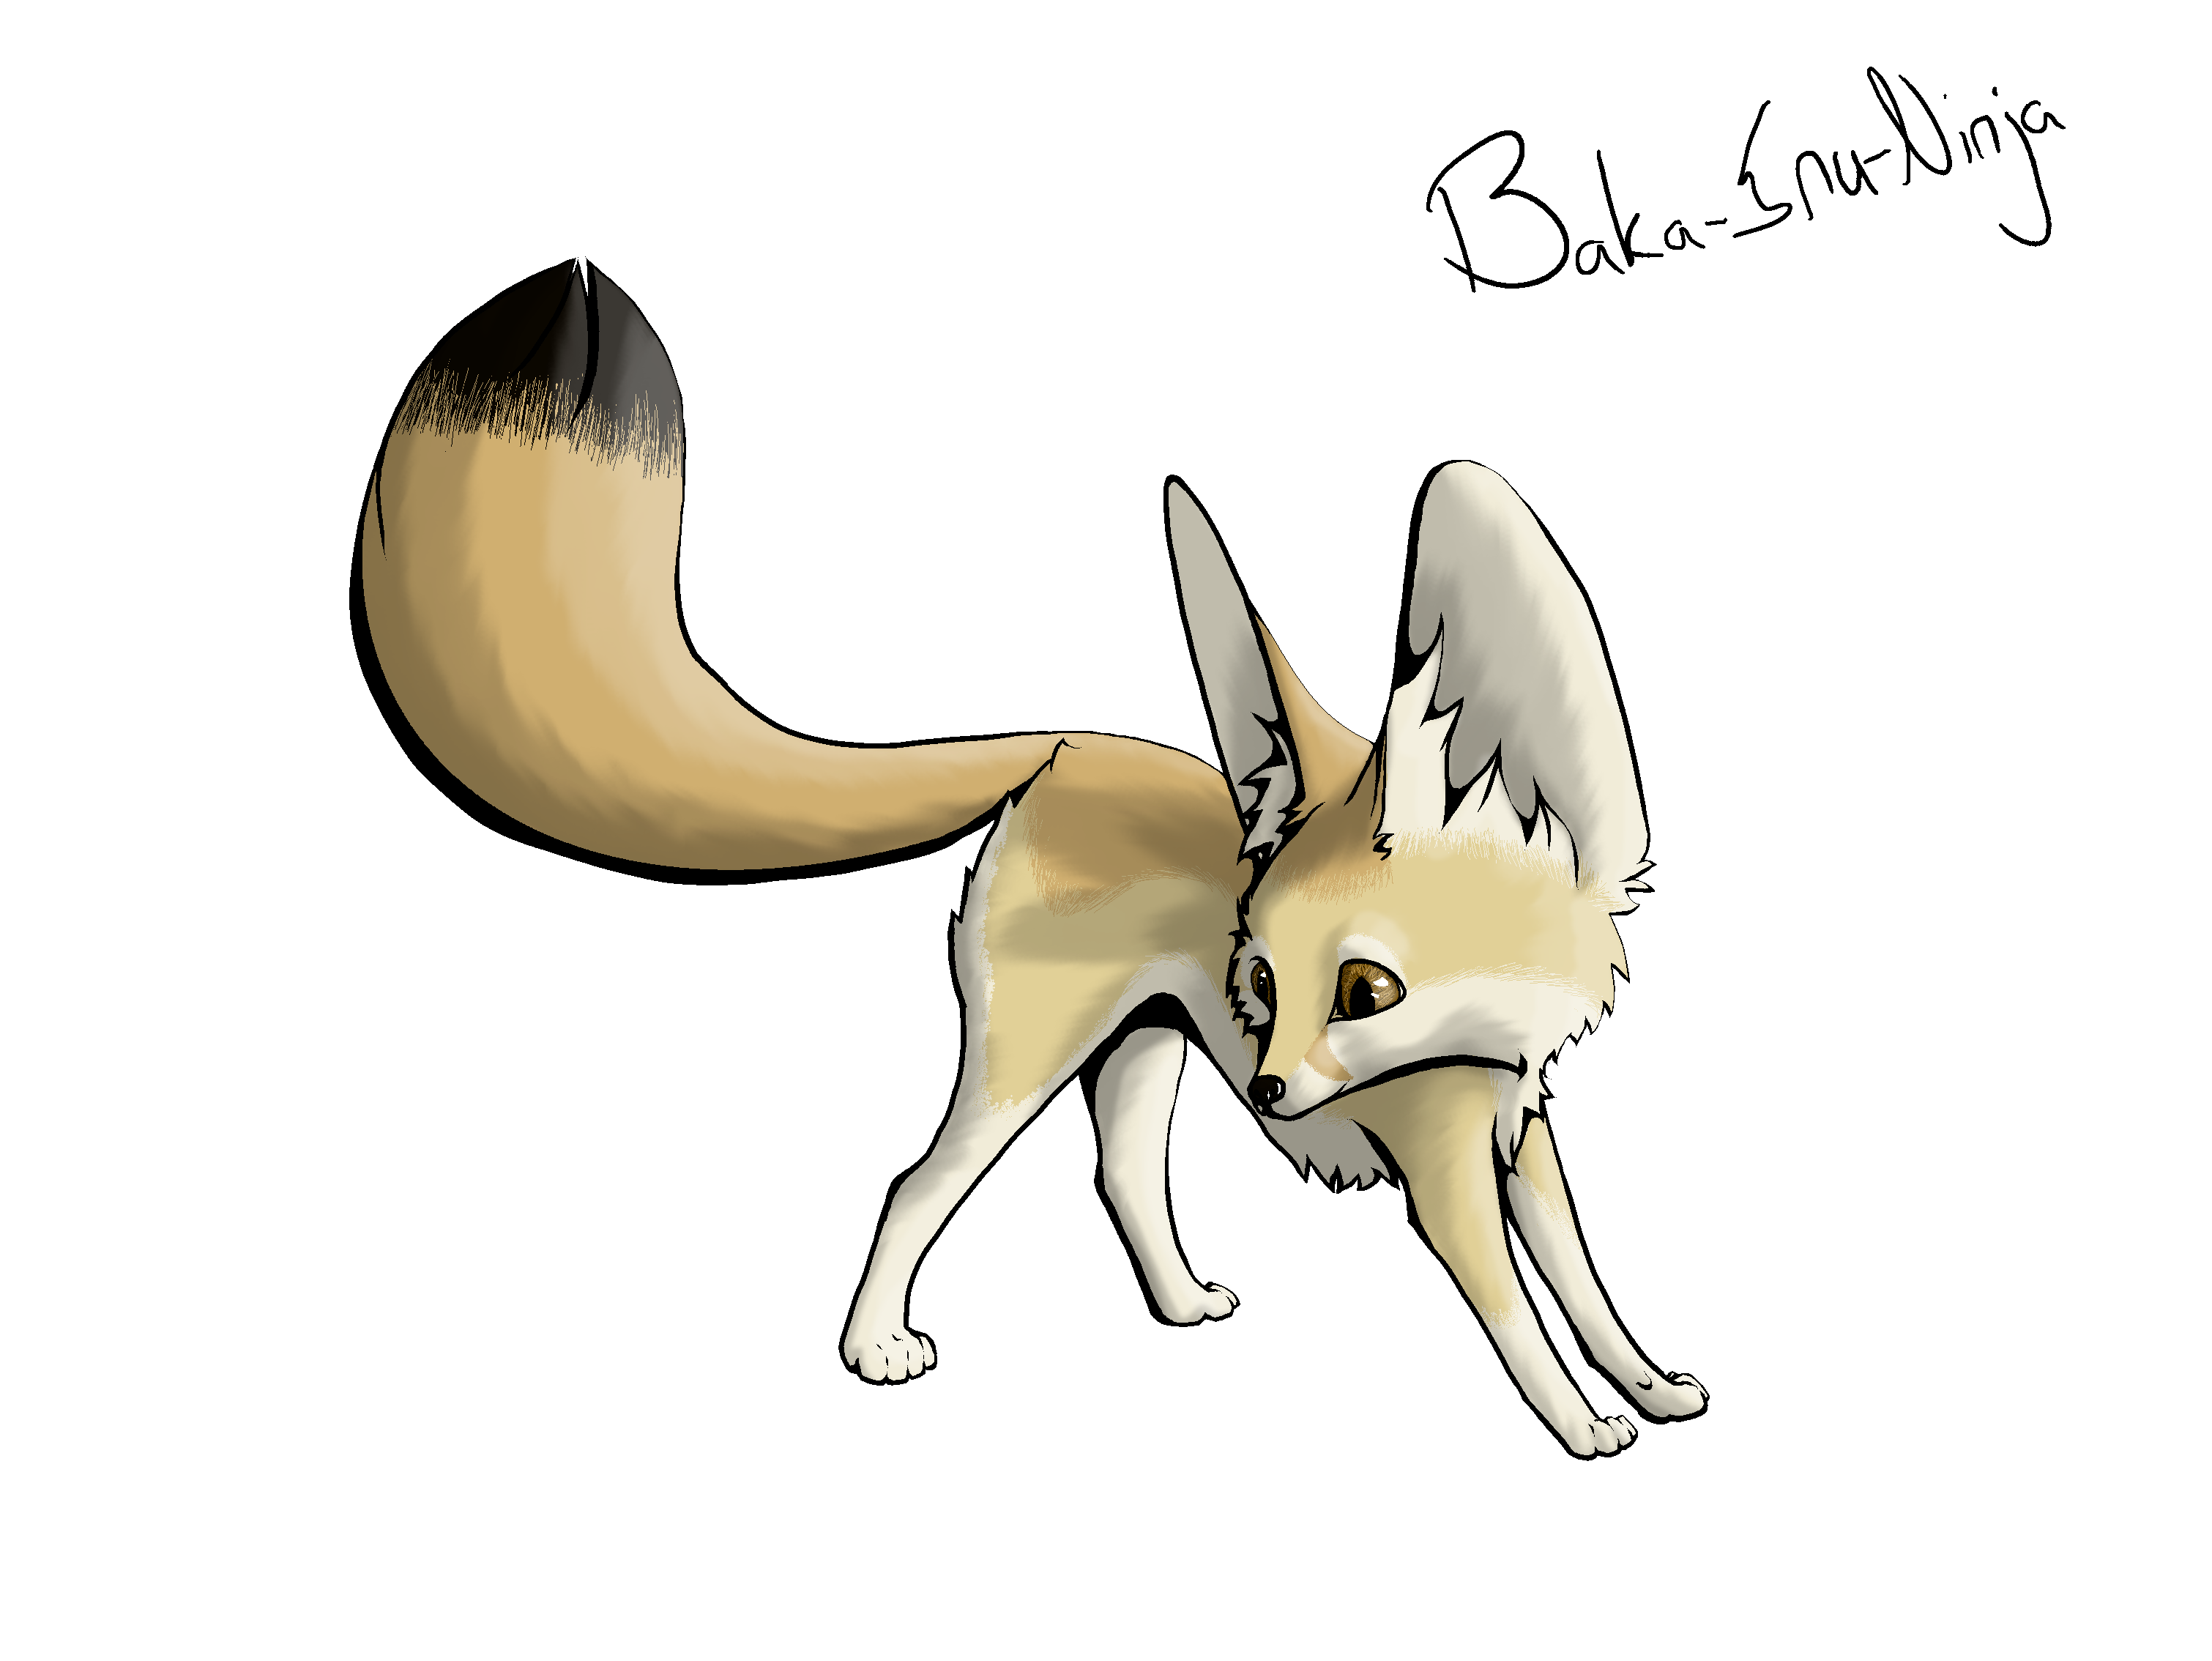 clipart fox desert fox